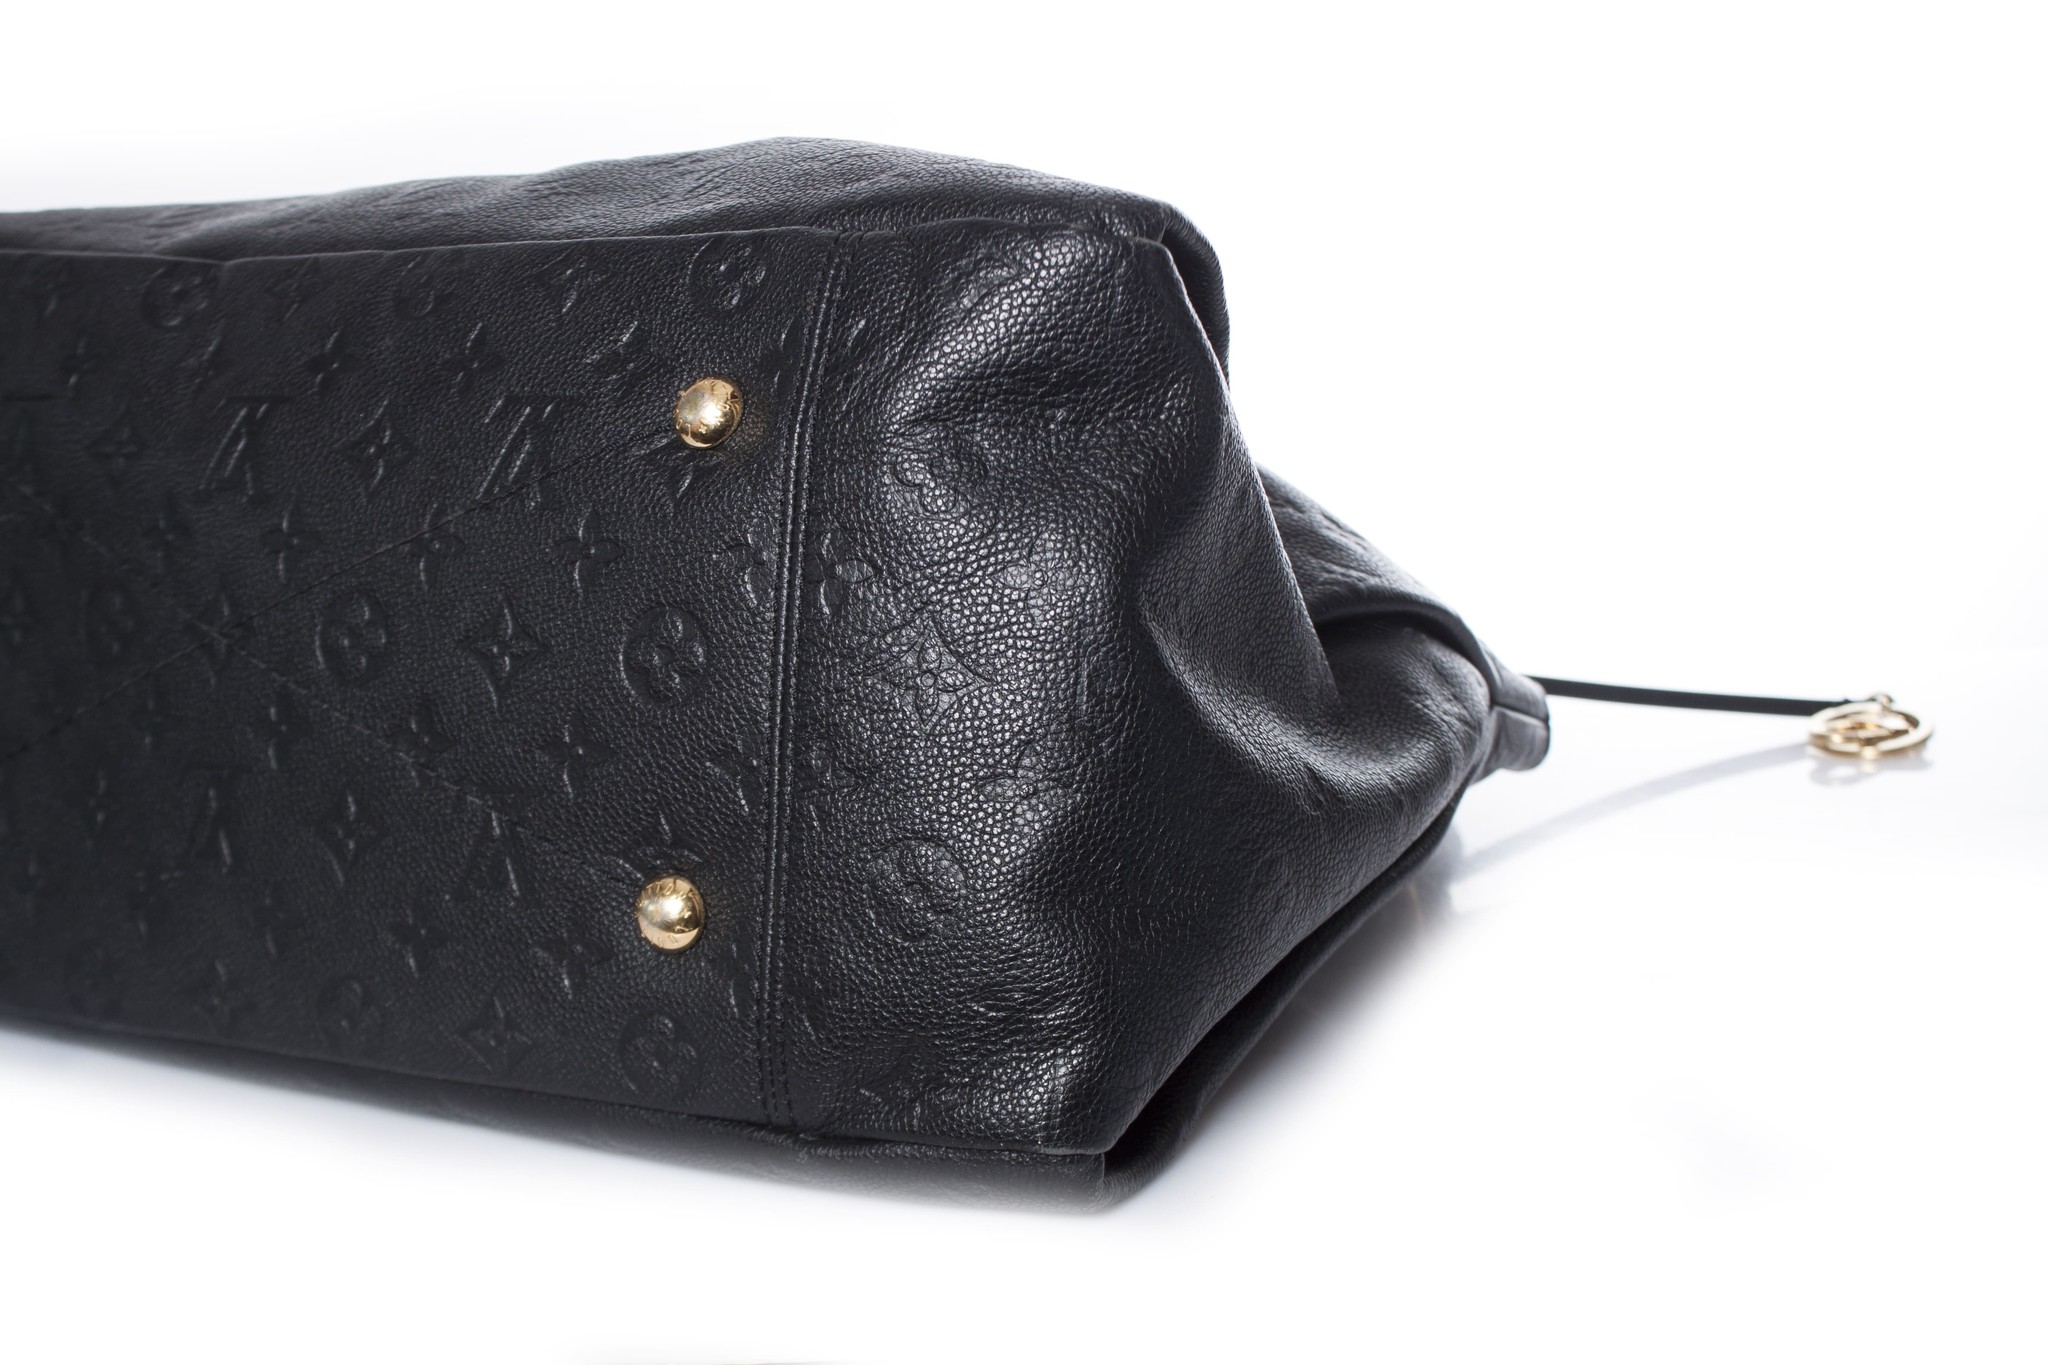 Louis Vuitton Black Monogram Leather Artsy MM Bag. - Unique Designer Pieces